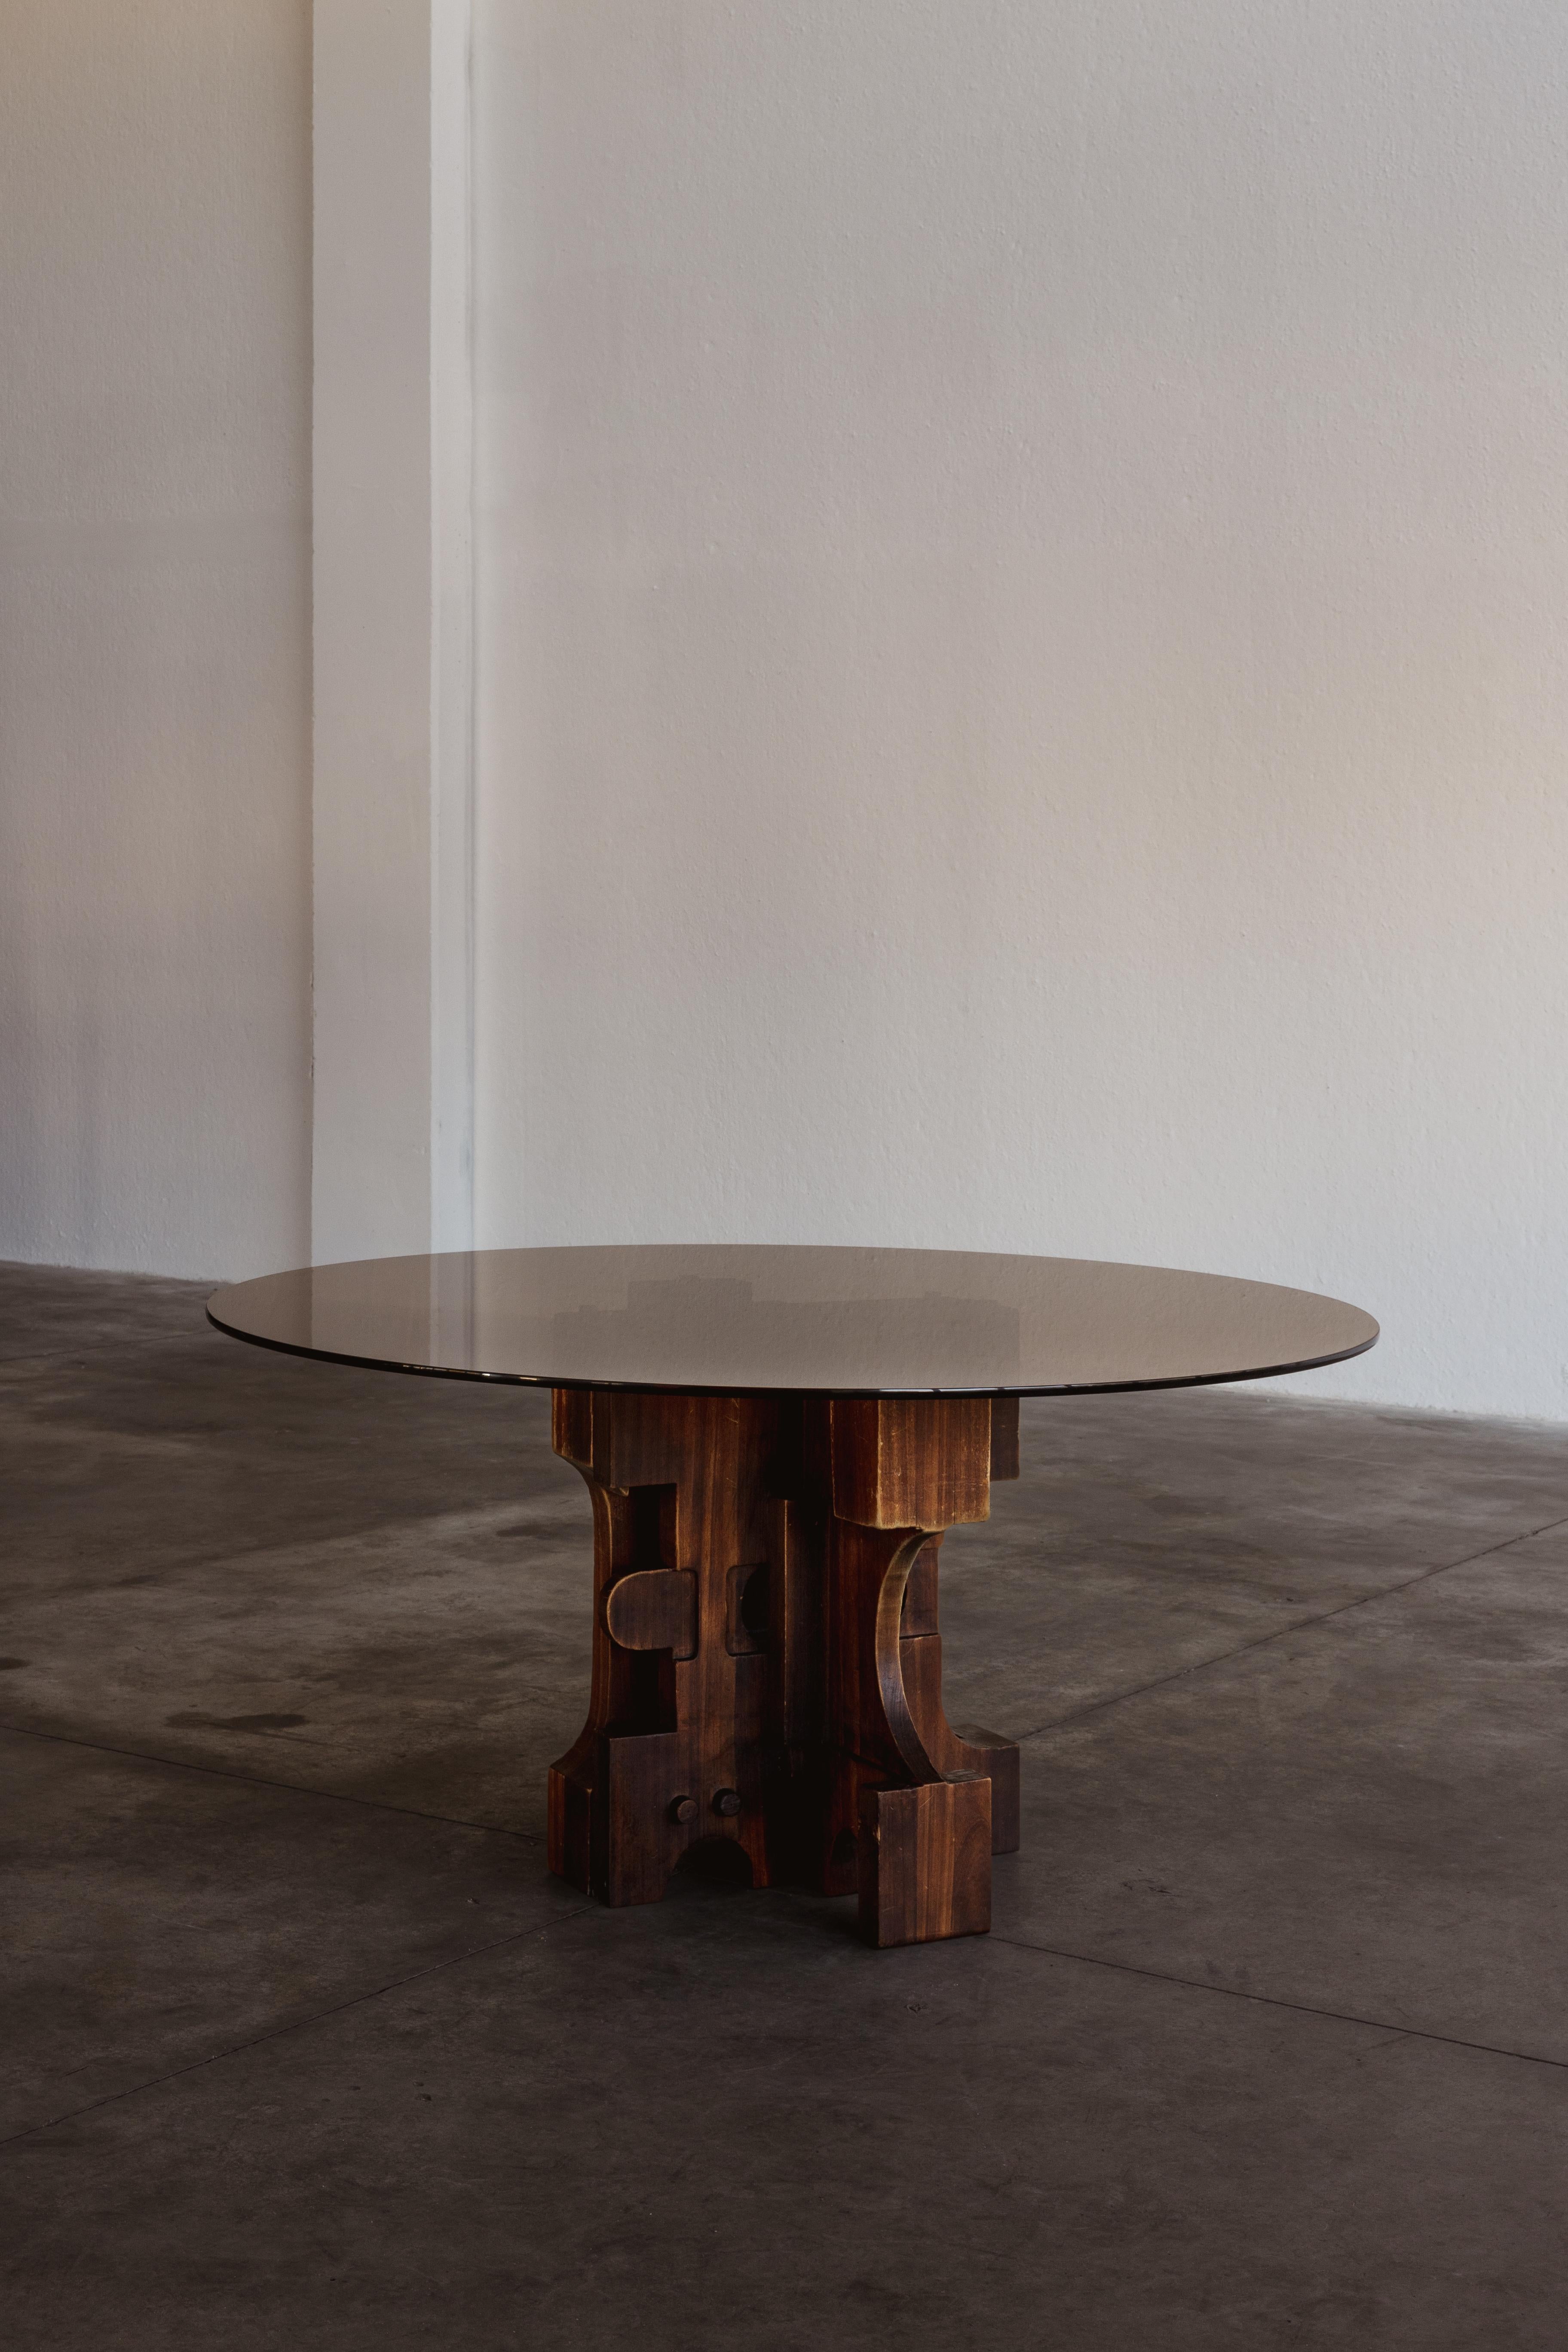 Nerone & Patuzzi Esstisch für Gruppo NP2, Glas, Eisen und Holz, Italien, 1970er Jahre.

Dieser Esstisch wurde von dem italienischen Duo Nerone und Patuzzi entworfen und ist ein Kunstwerk. Die Basis besteht aus einer asymmetrischen Anordnung von